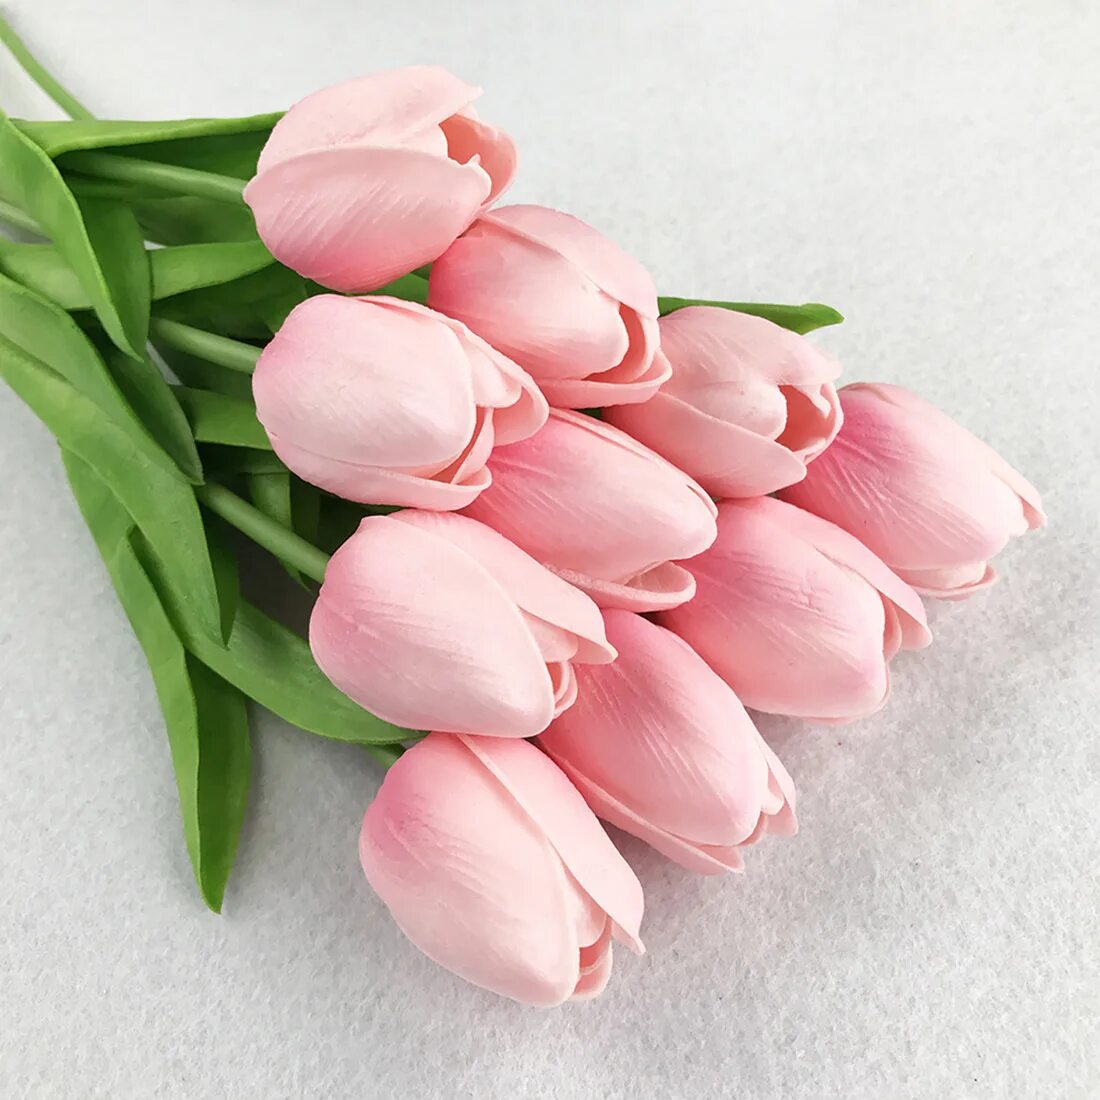 Букет тюльпанов 31 шт. Пудровые тюльпаны. Розовые тюльпаны. Букеттрозовых тюльпанов. Что значат розовые тюльпаны